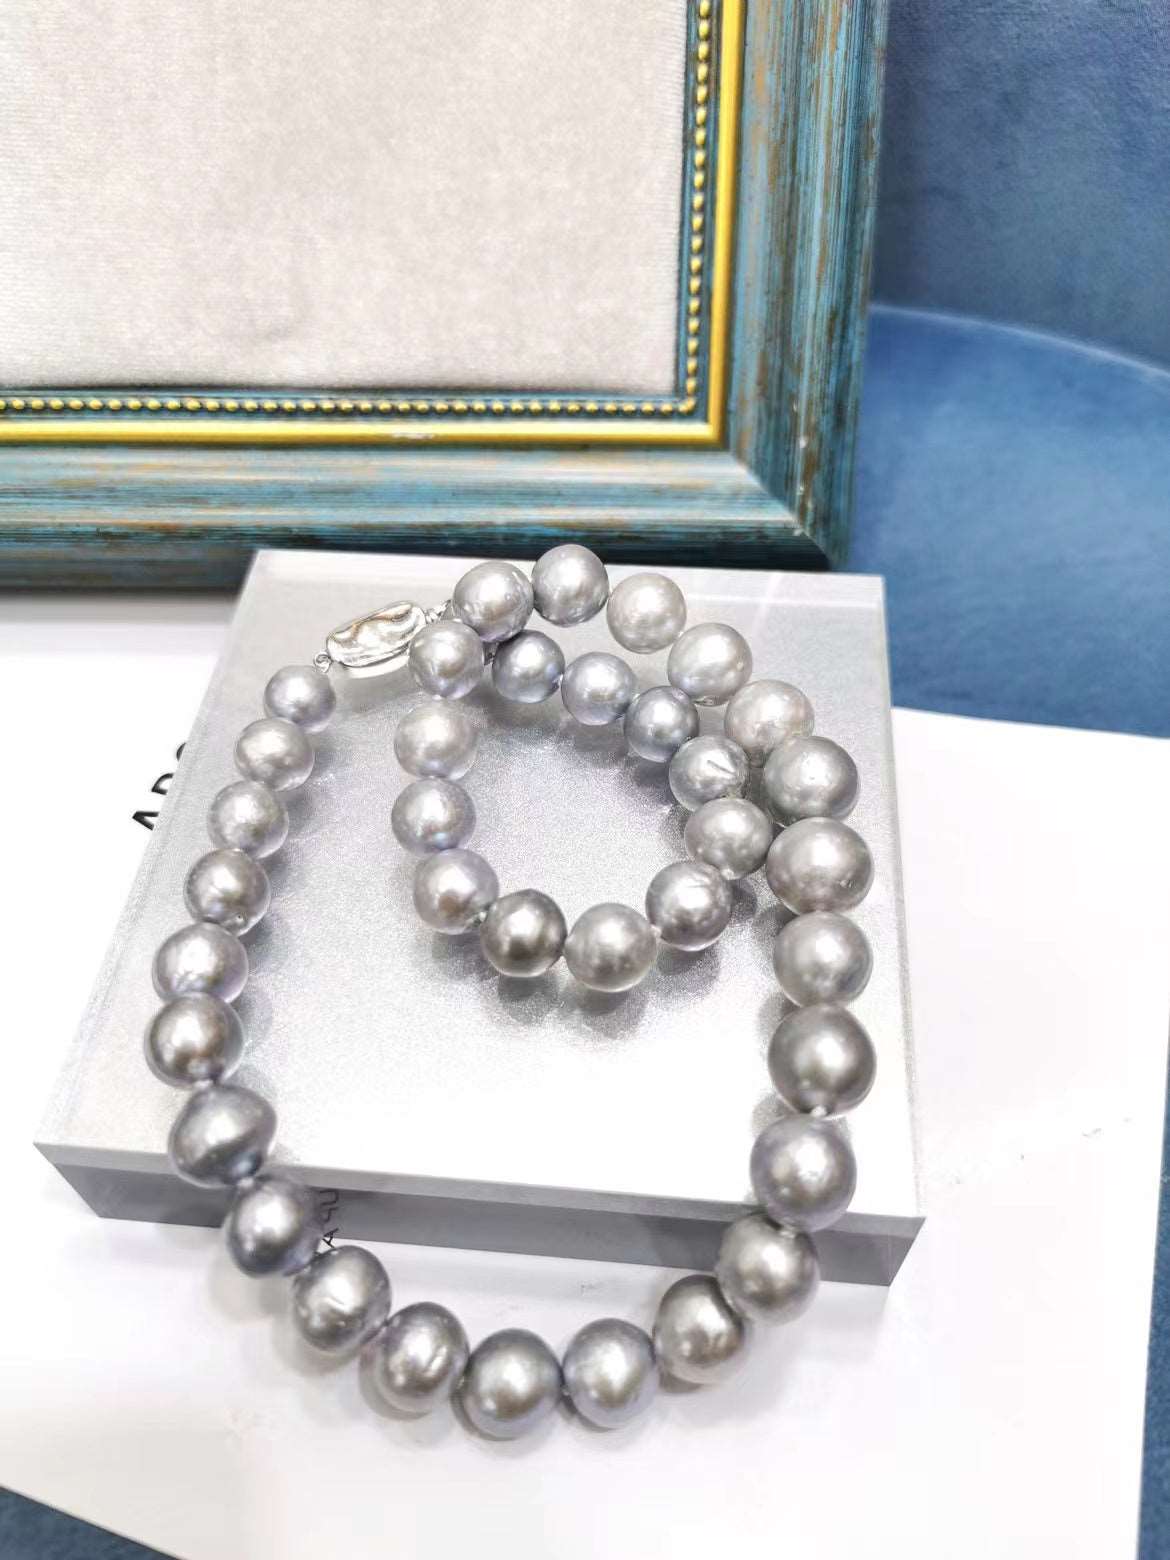 Unique Gray Pearl Necklace woyaza